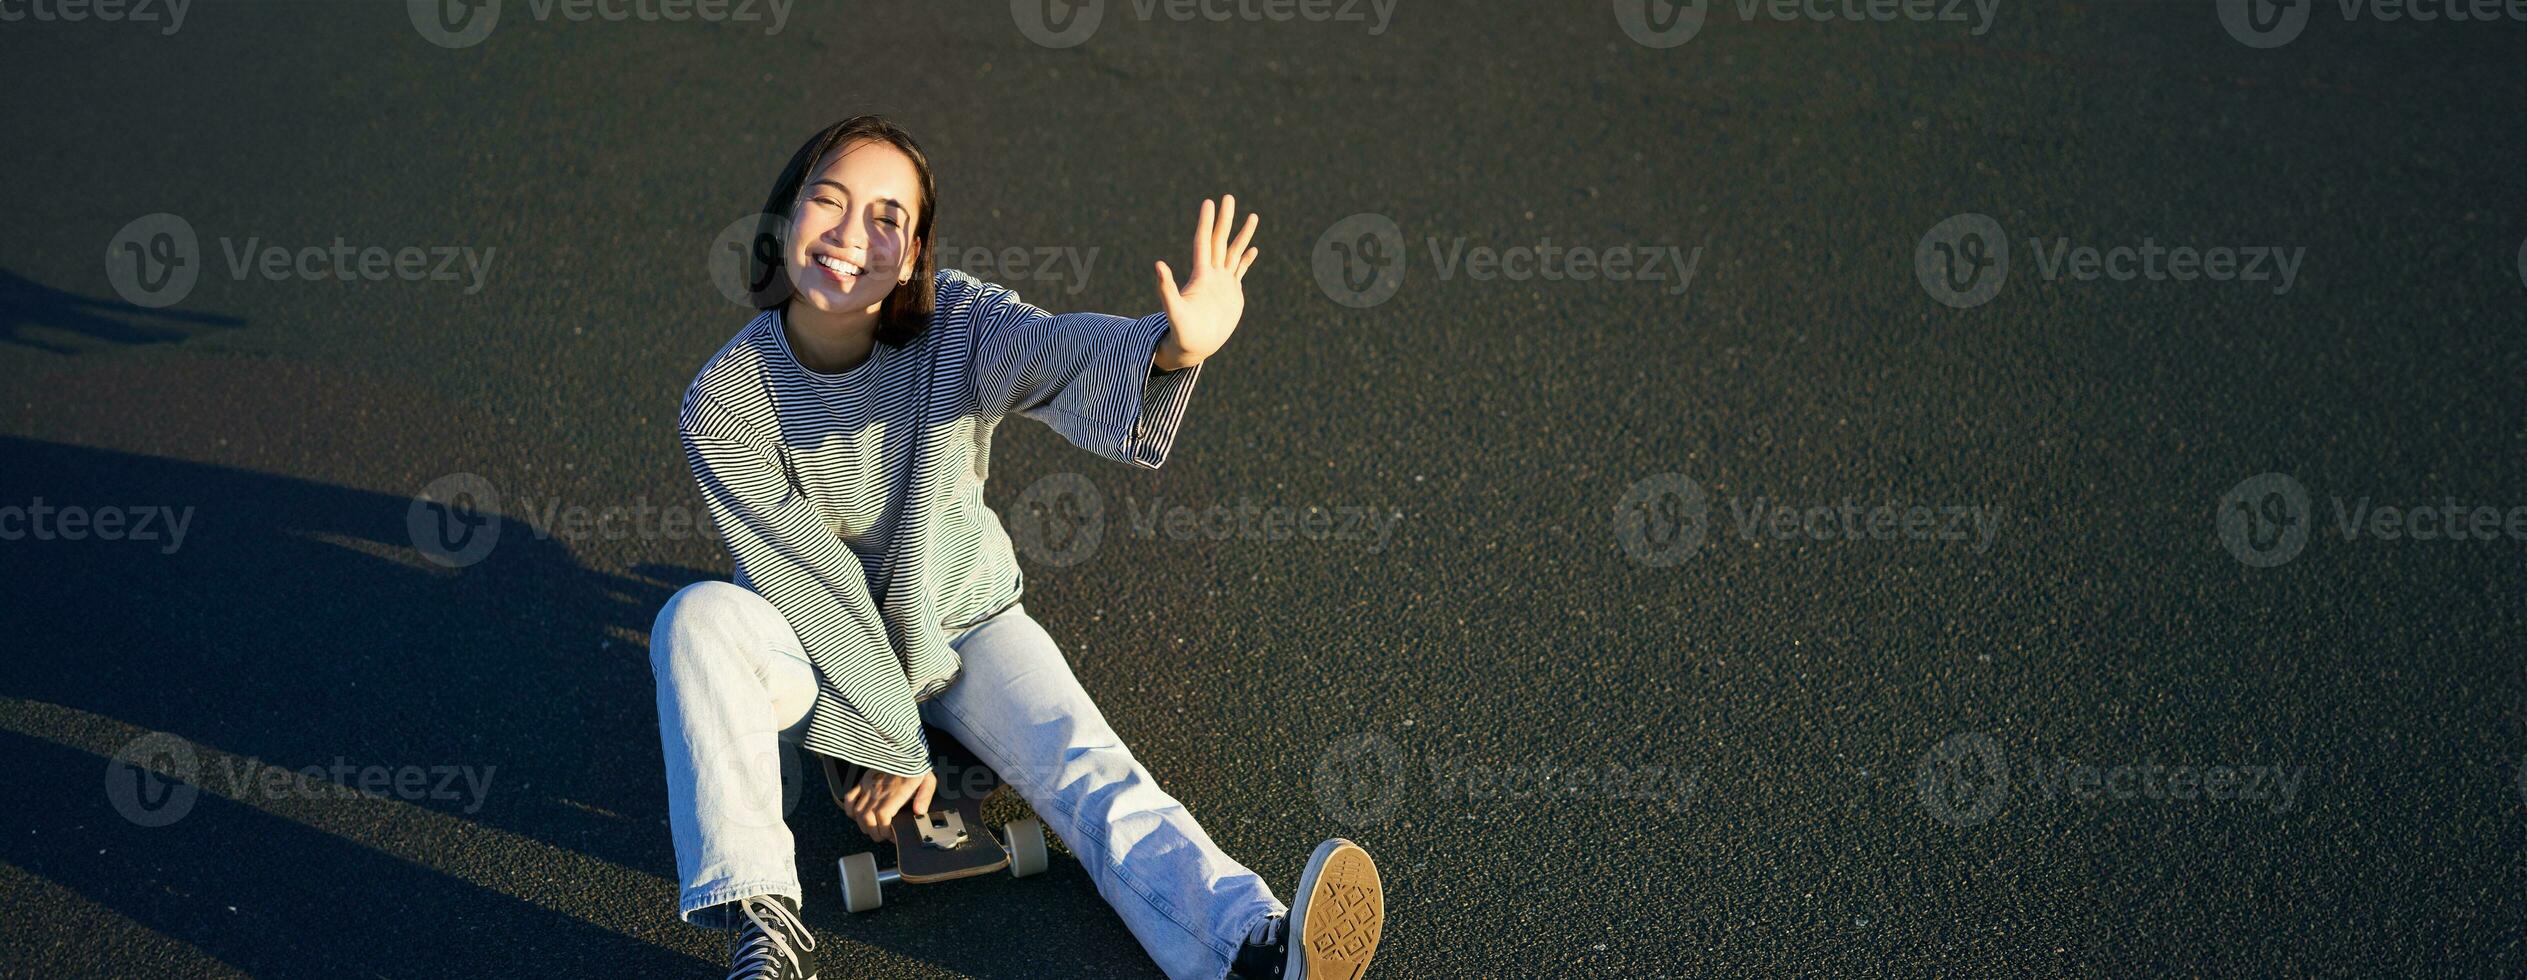 positiv Koreanisch Mädchen Abdeckungen ihr Gesicht von Sonnenlicht, sitzt auf Skateboard und lächelt glücklich foto